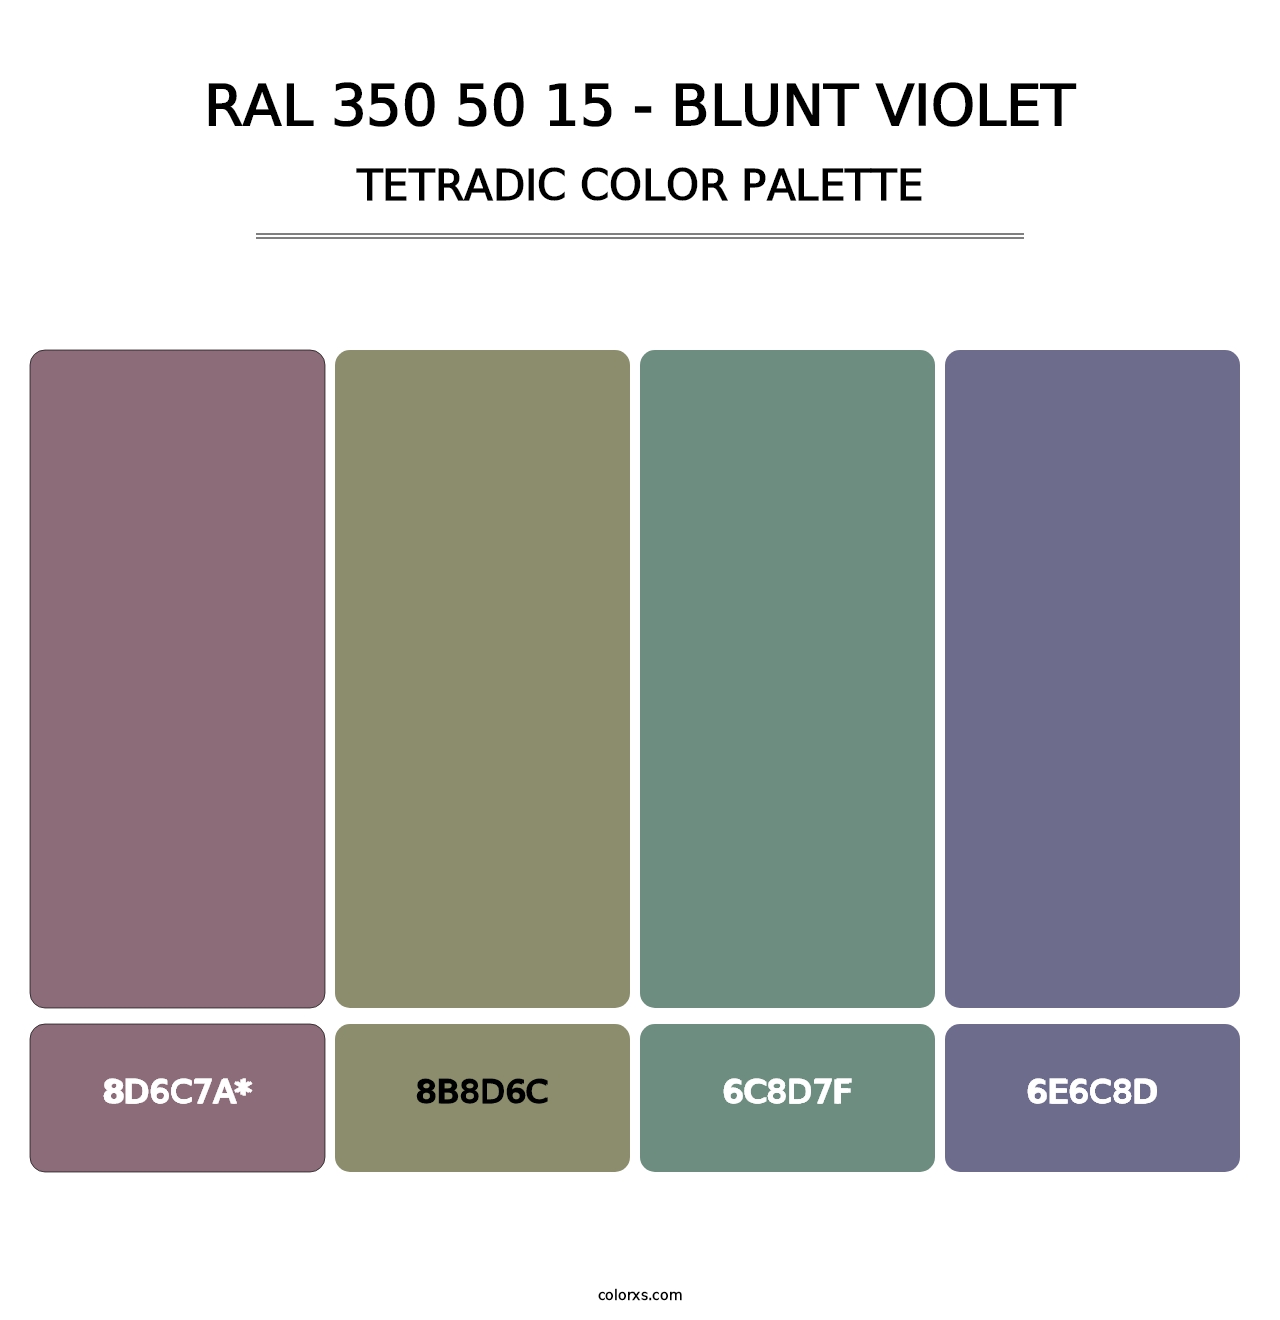 RAL 350 50 15 - Blunt Violet - Tetradic Color Palette